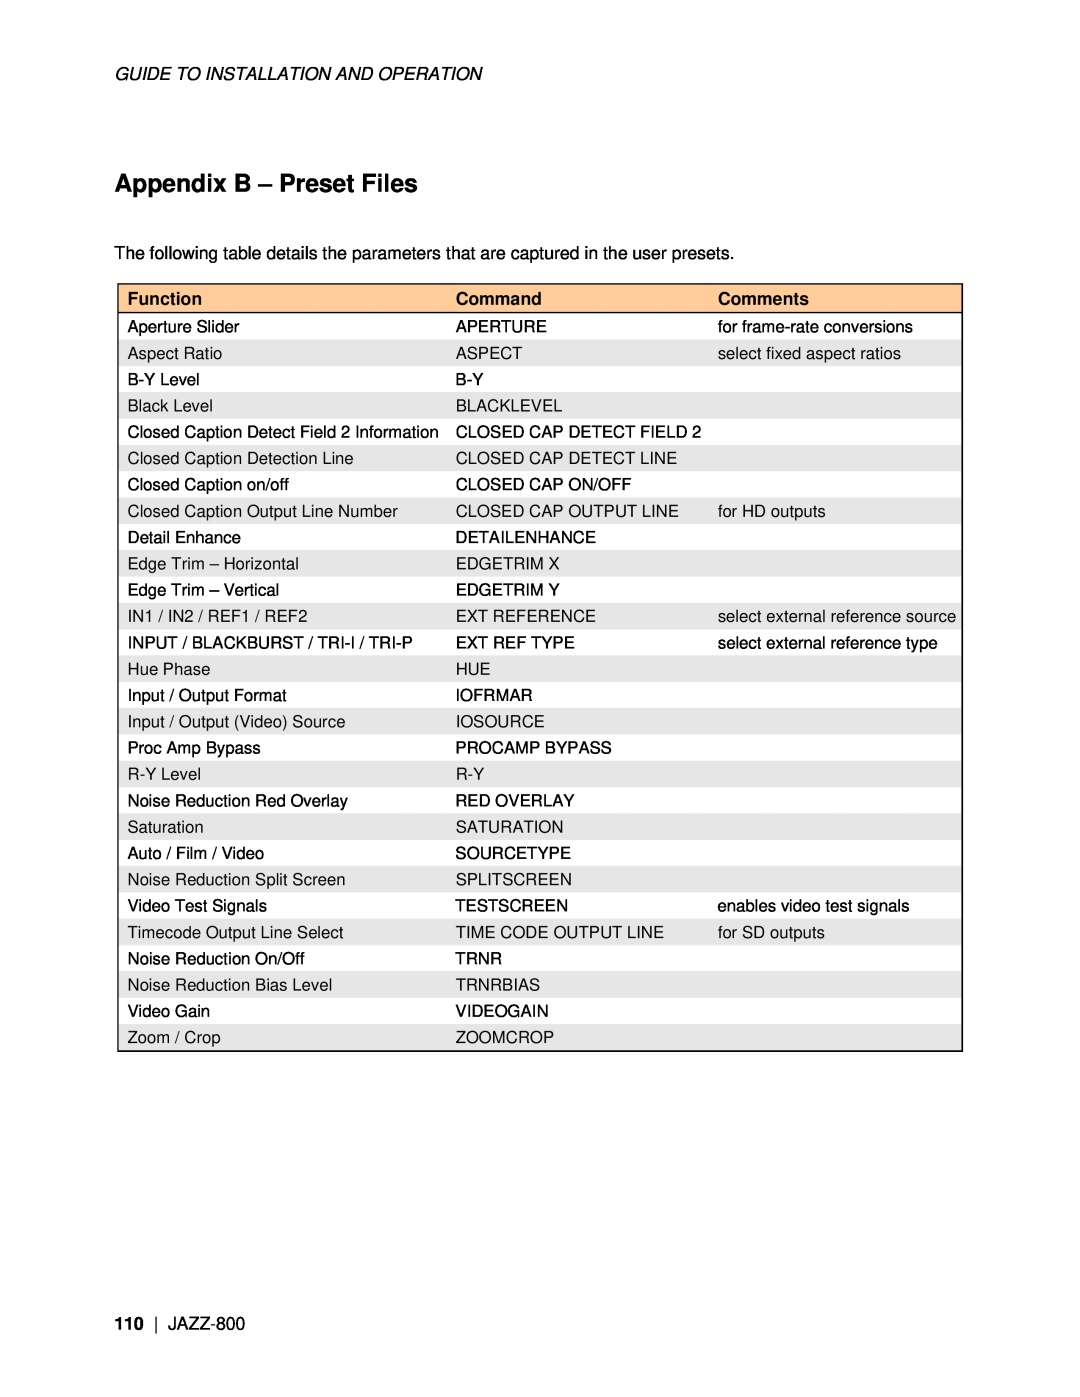 Miranda Camera Co JAZZ-800 manual Appendix B - Preset Files, Function, Command, Comments 